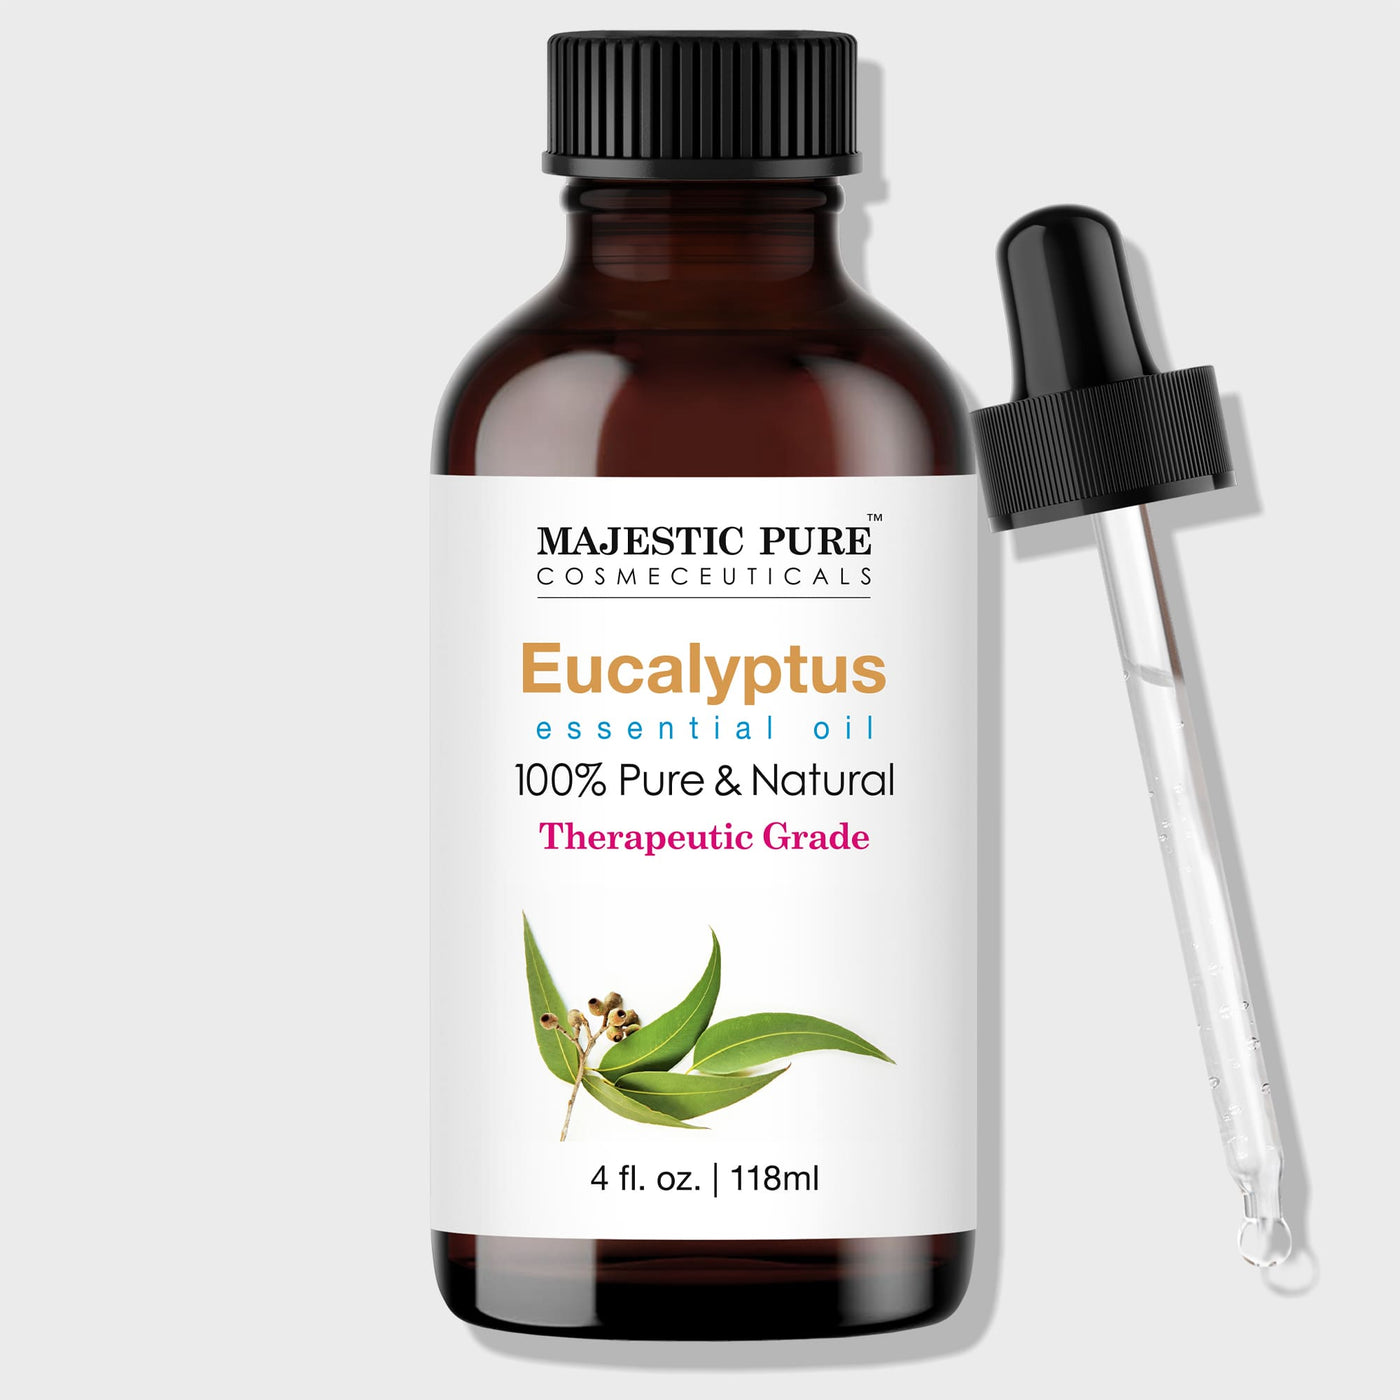 Majestic Pure Eucalyptus Essential Oil